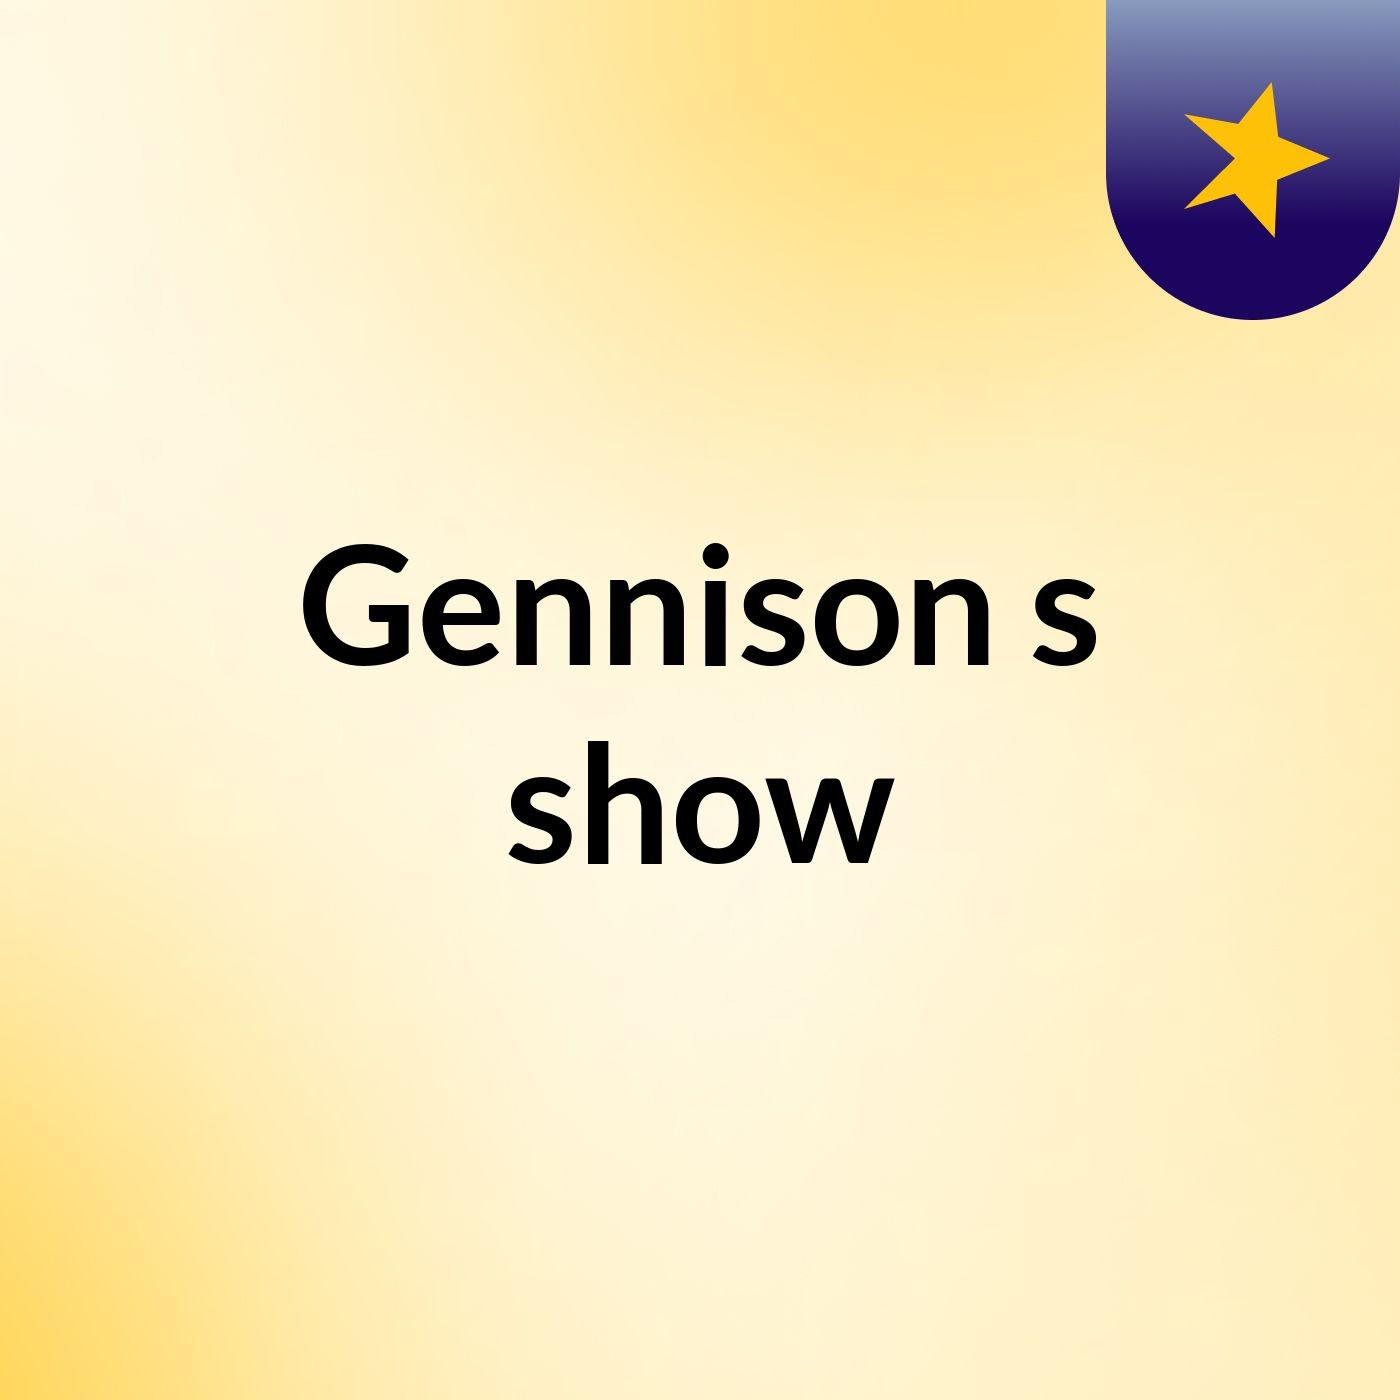 Gennison's show